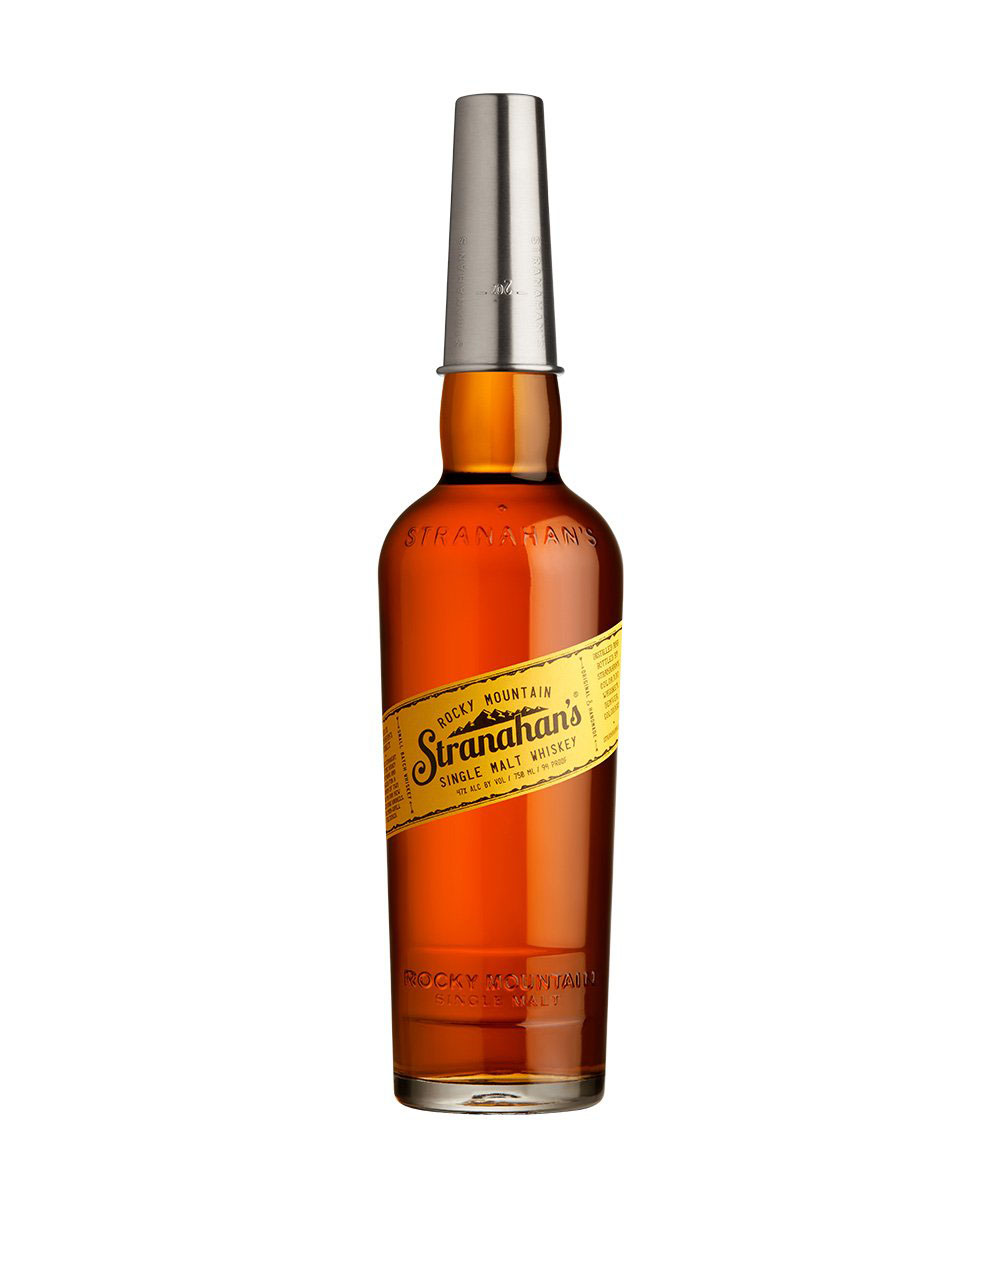 Oppidan Solera Aged Bourbon Whiskey